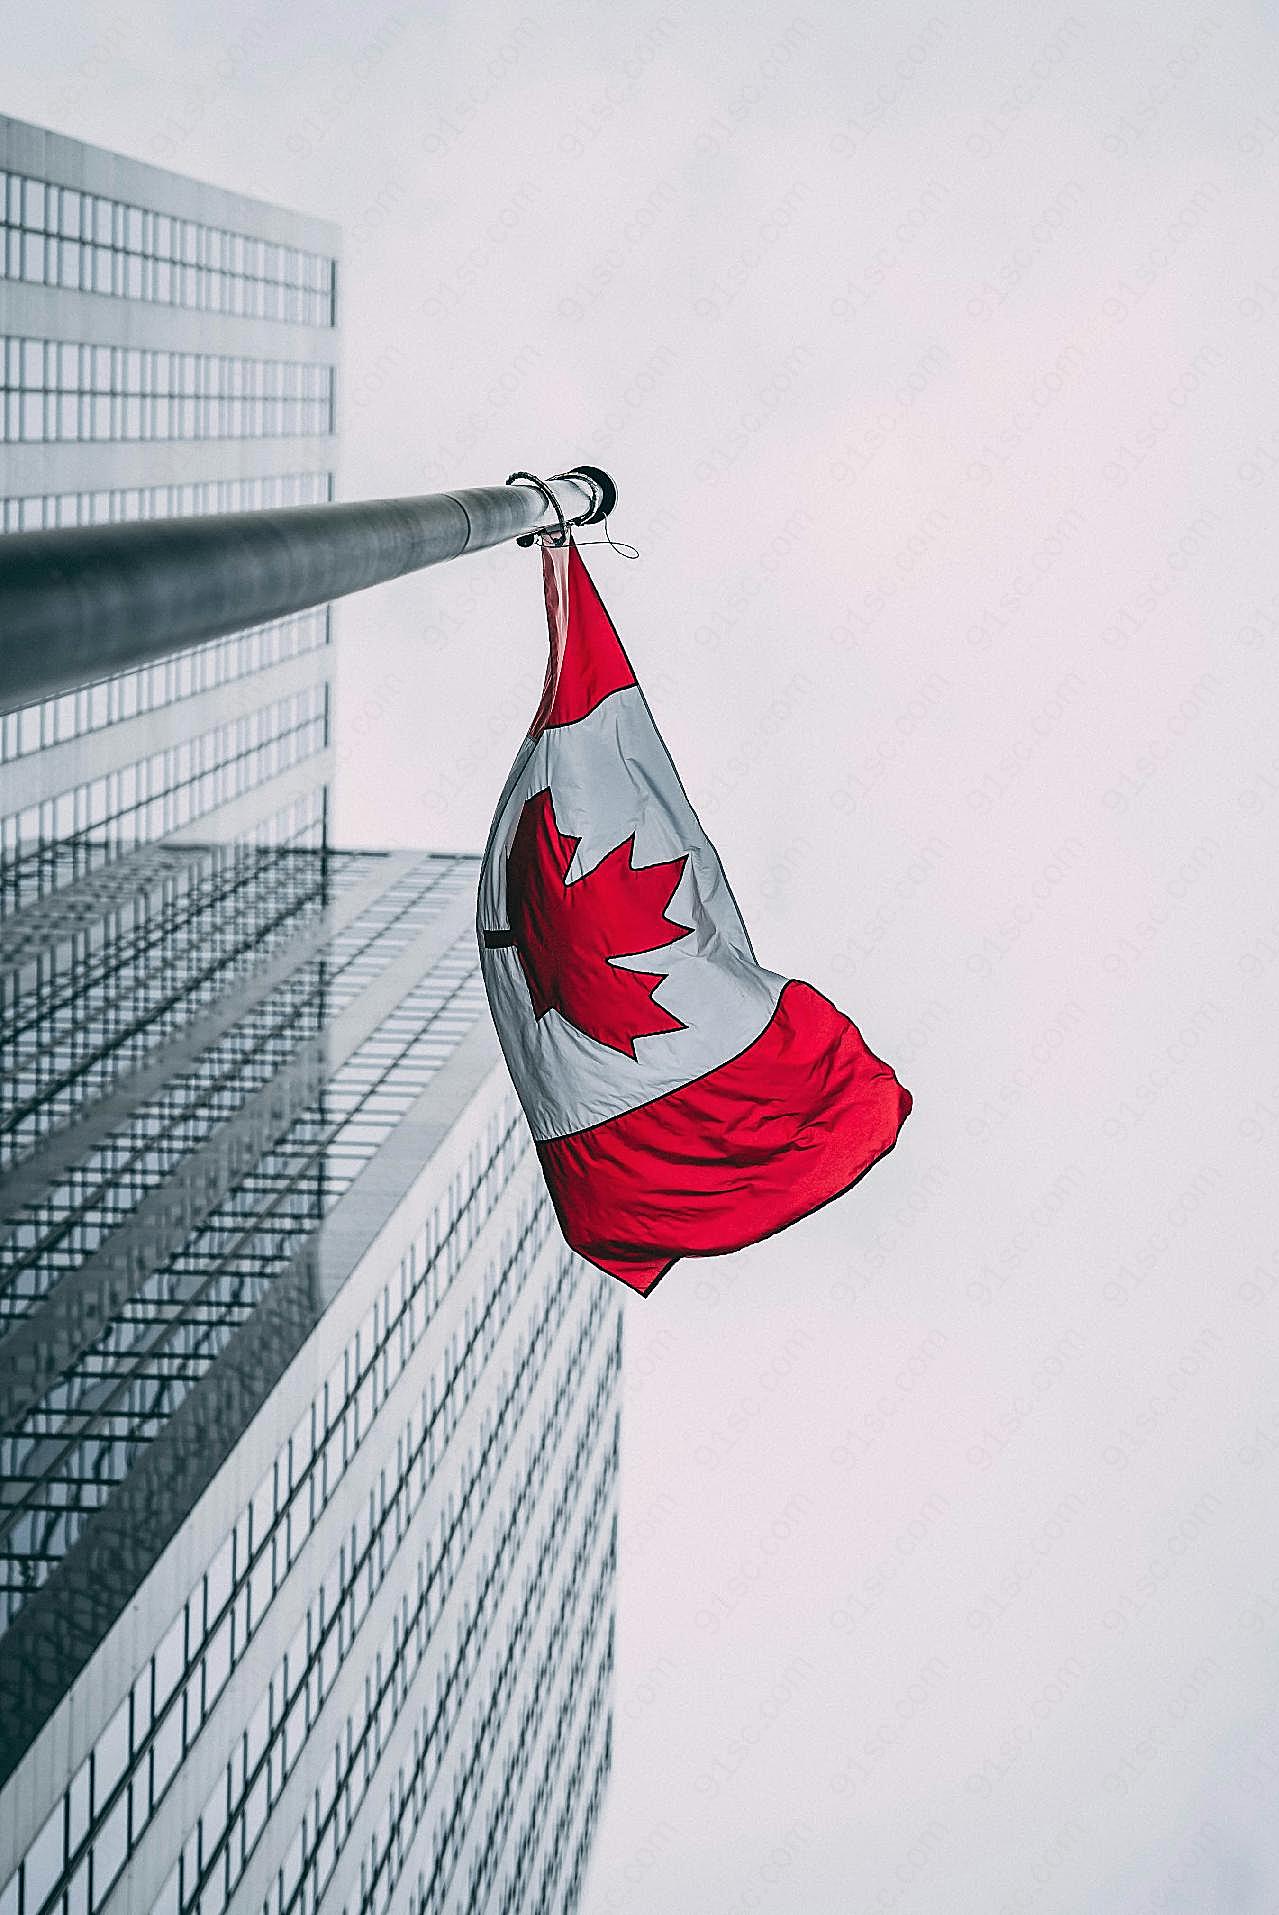 加拿大国旗飘扬图片摄影